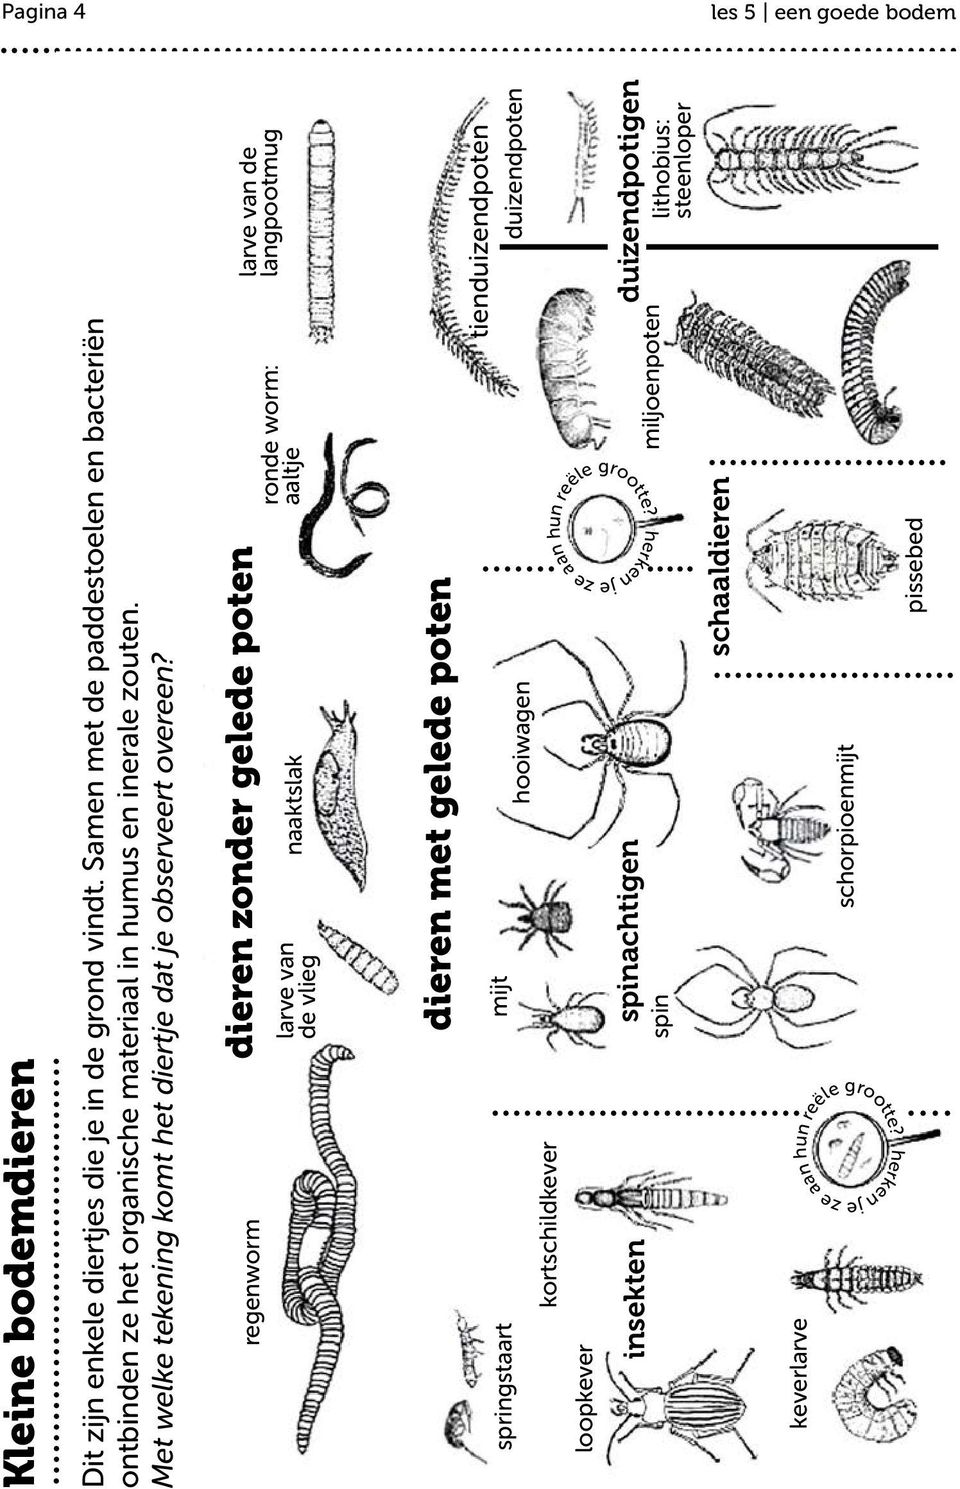 regenworm dieren zonder gelede poten larve van de vlieg naaktslak ronde worm: aaltje larve van de langpootmug springstaart loopkever kortschildkever mijt insekten